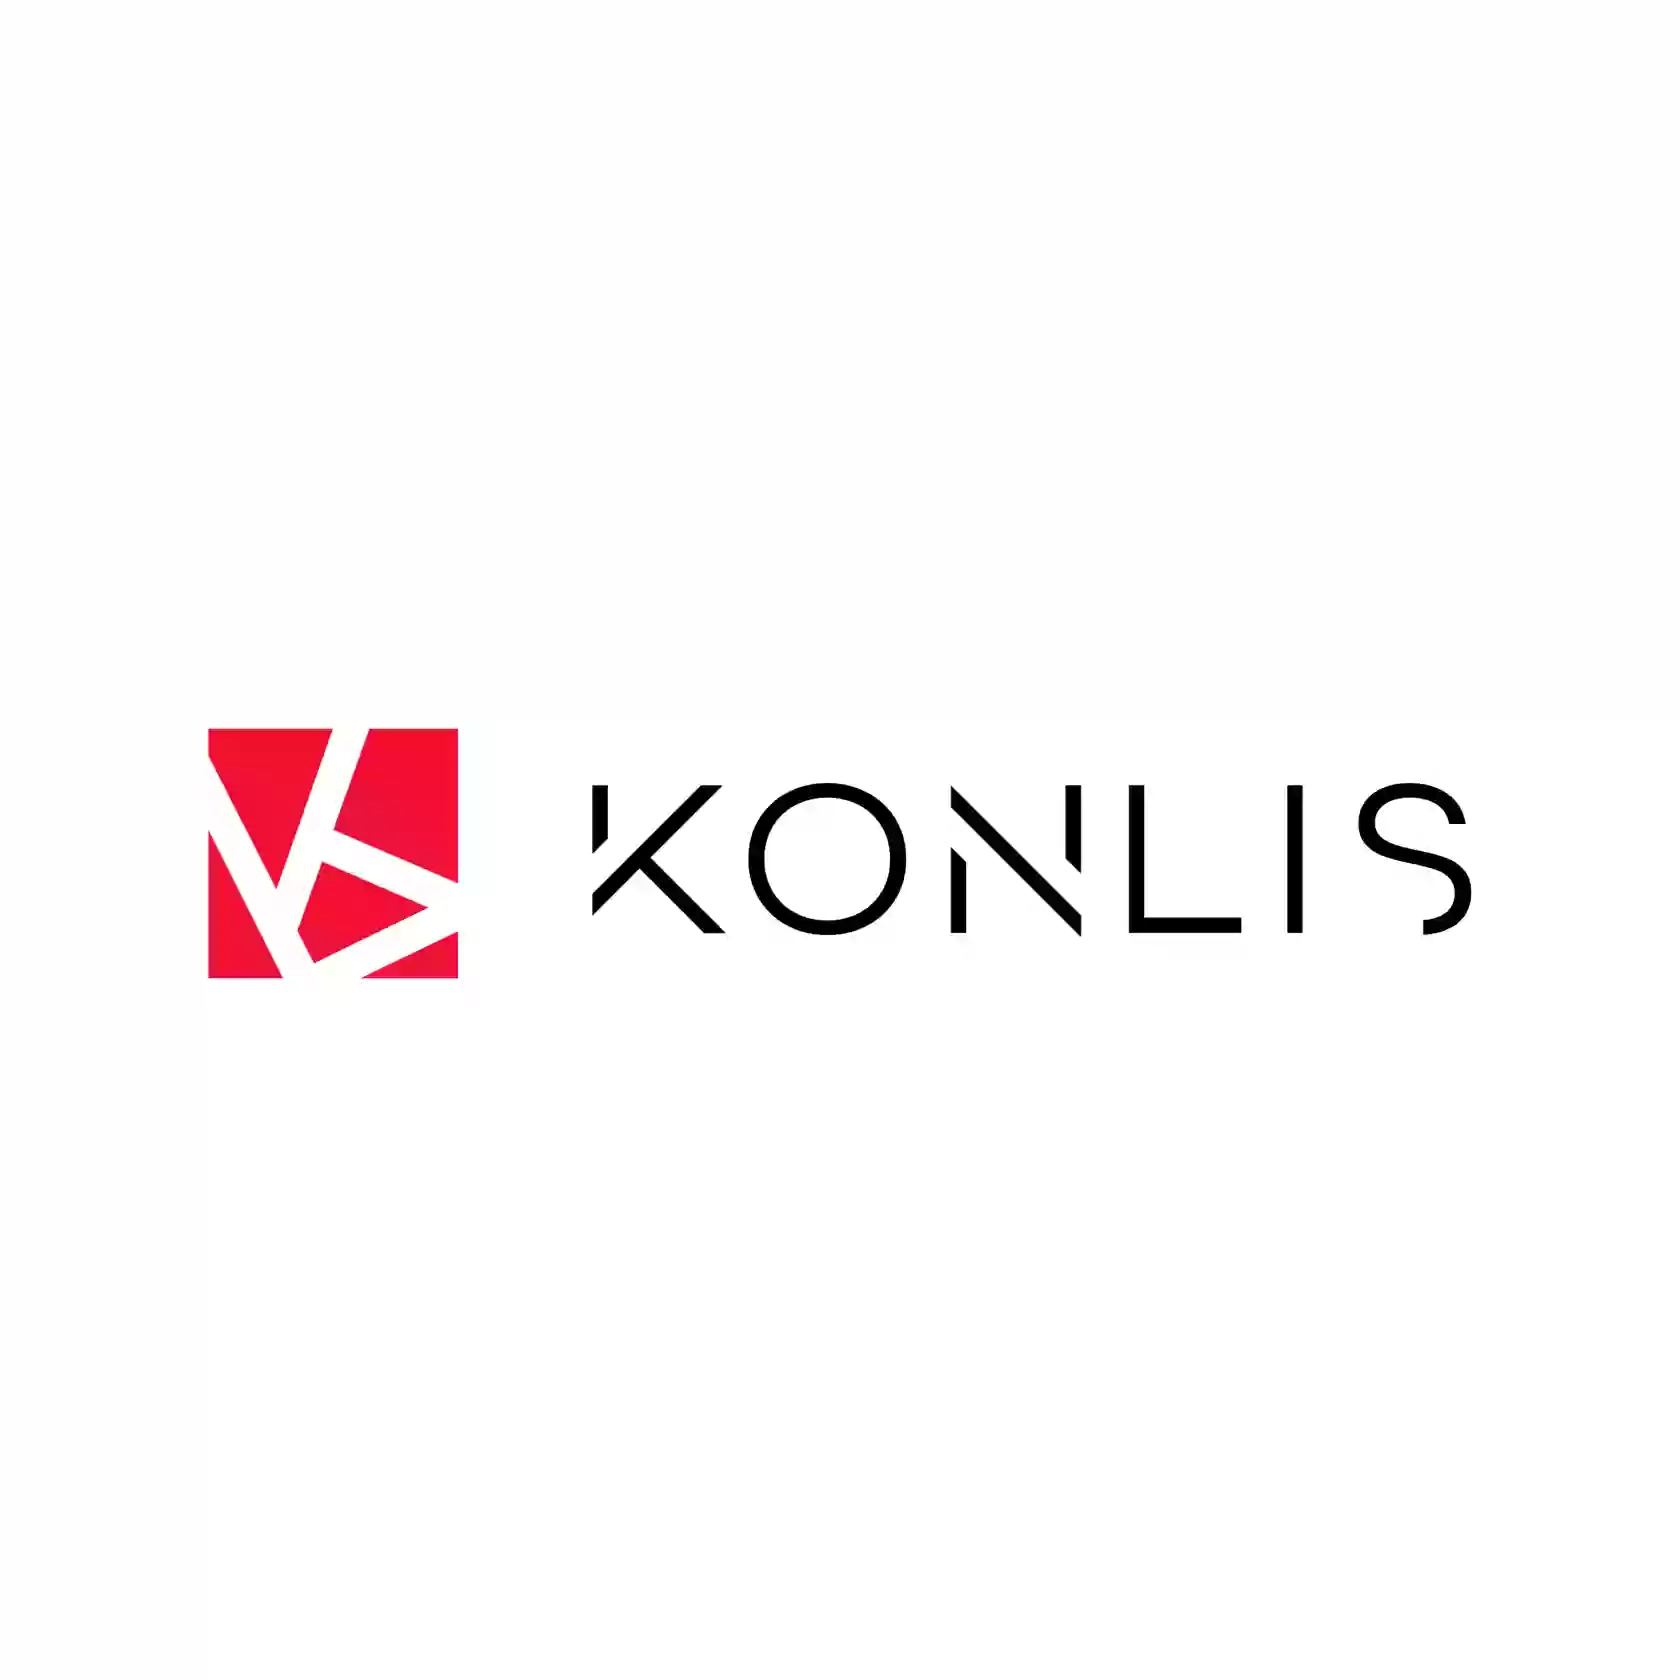 ООО "KONLIS PROM" производство твердотопливного оборудования, Котлы, Пеллетные горелки, порошковая покраска, плазменная резка металла